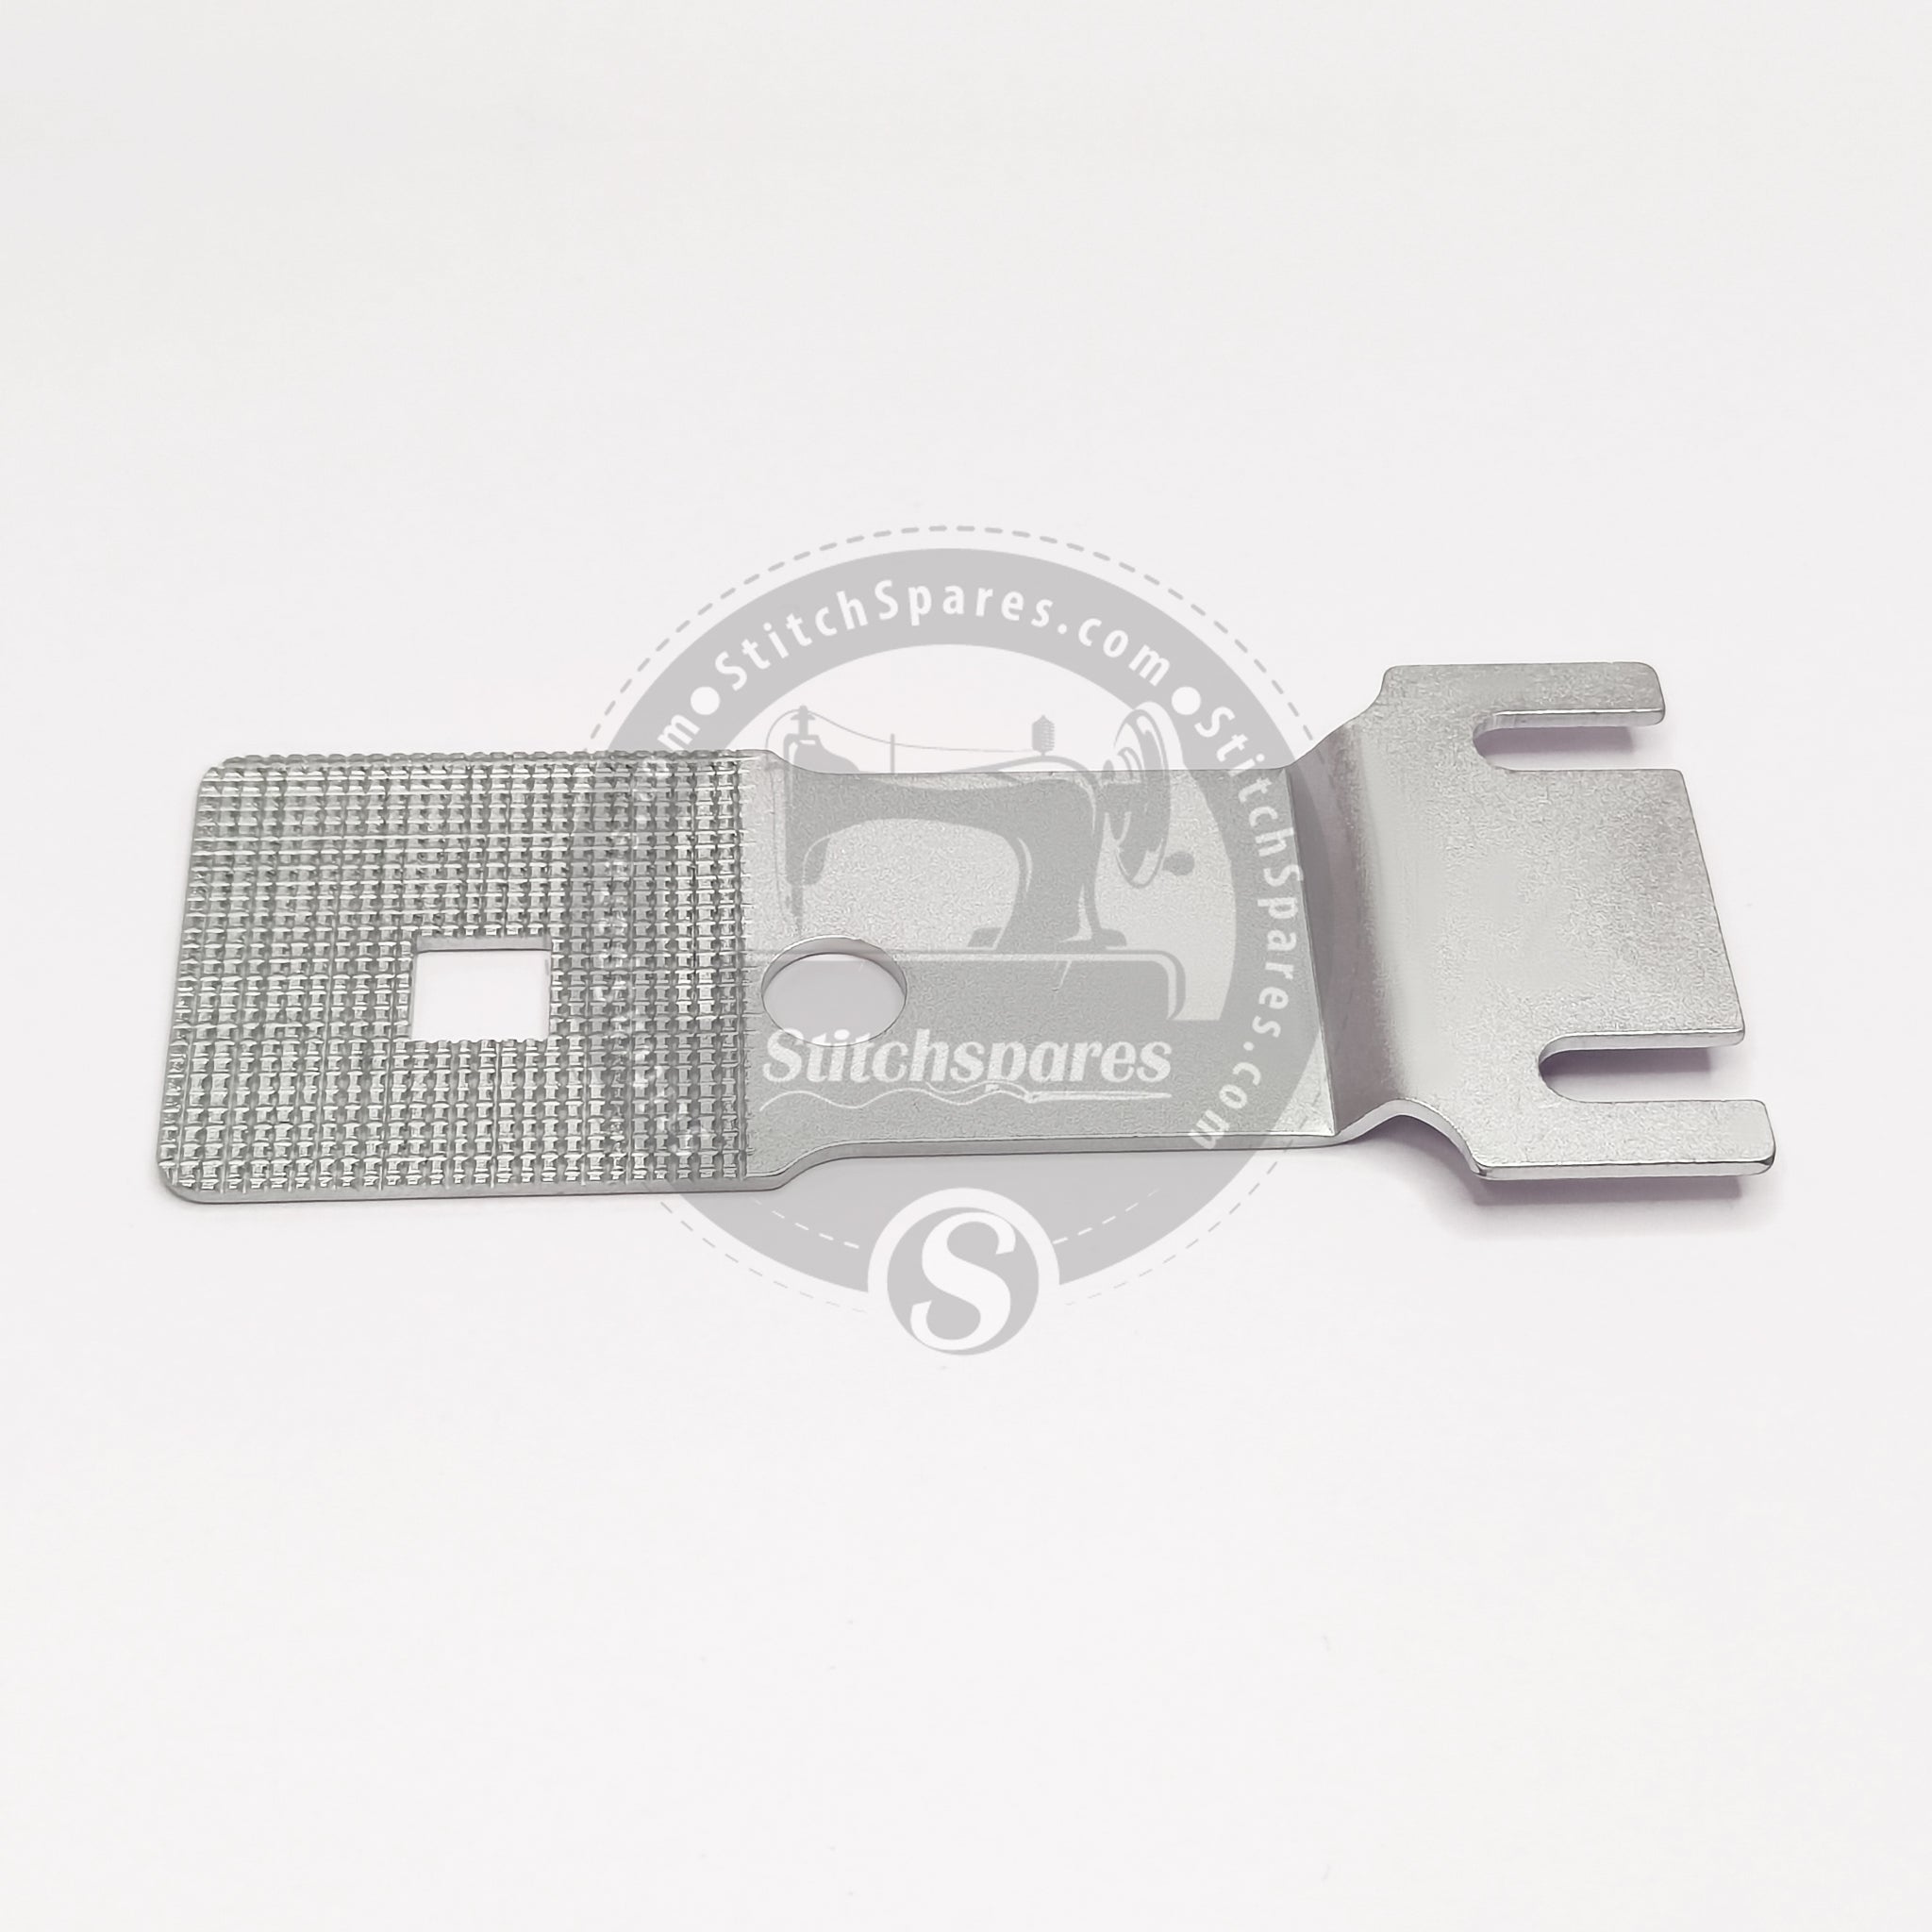 B2529-372-000 / B2529-372-C00 Placa de alimentación Botón pequeño para JUKI MB-372 Repuestos para máquina de coser botones